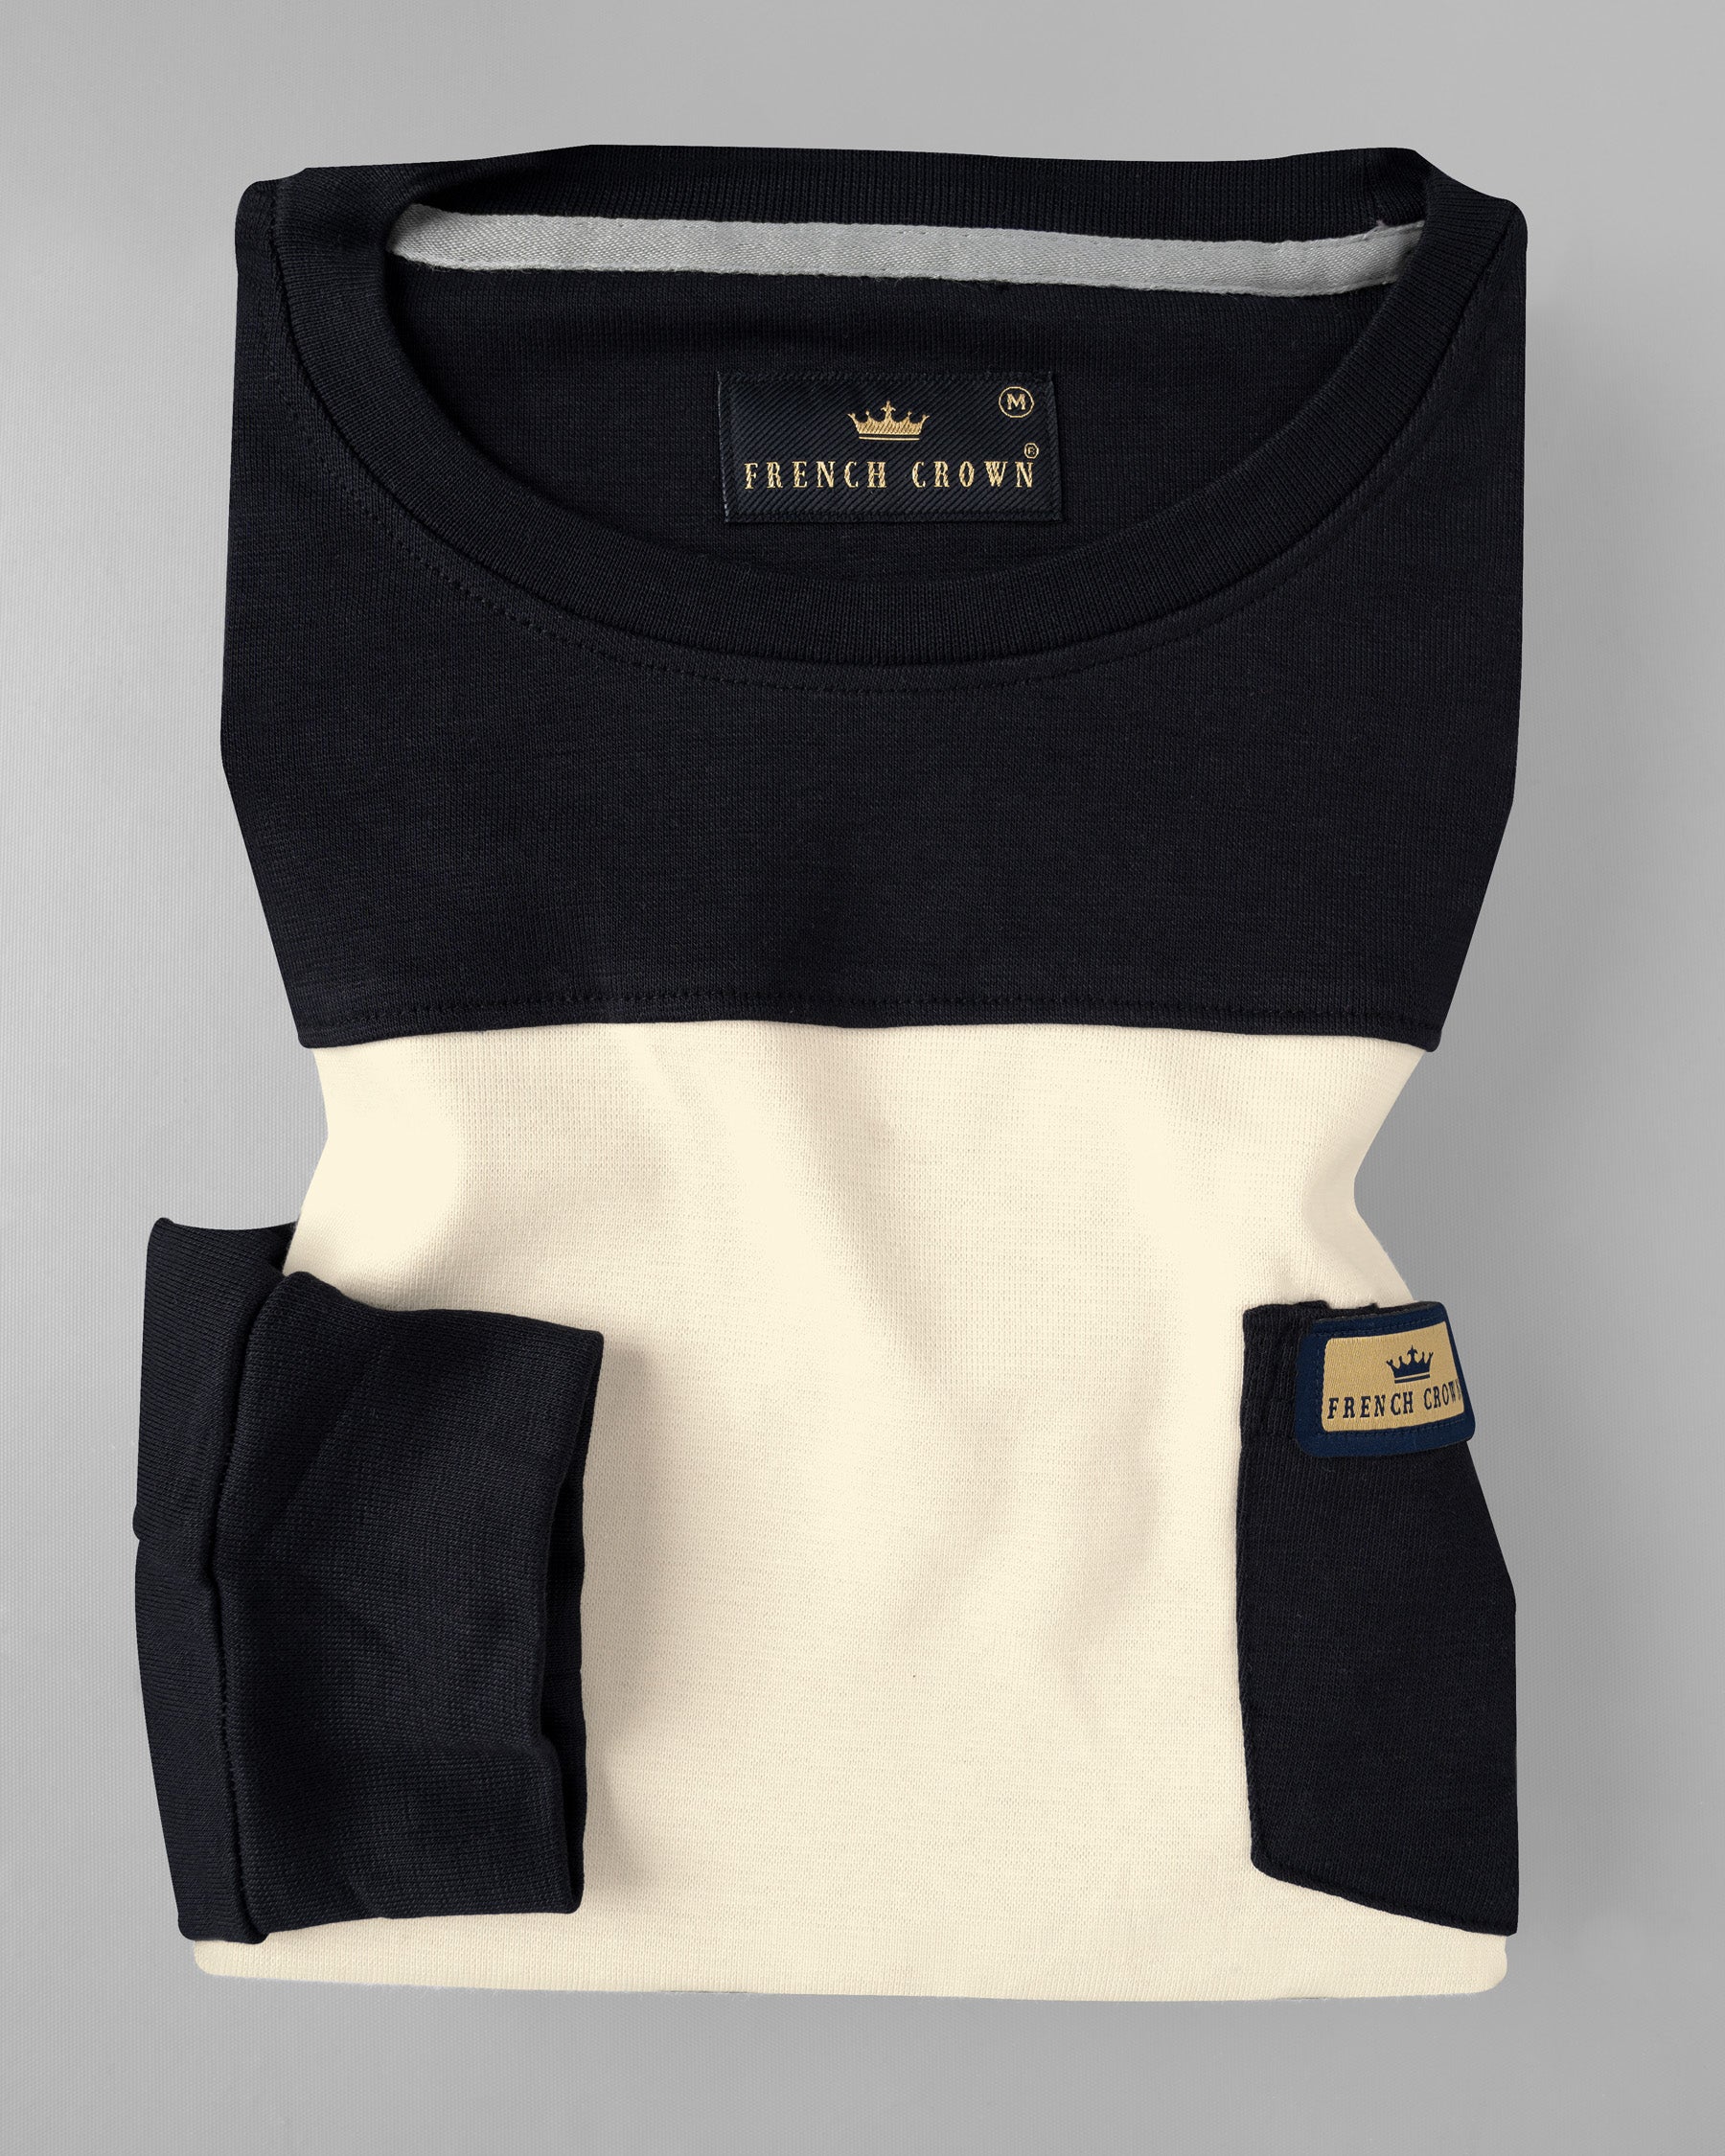 Jade Black and Wheatfield Full Sleeve Premium Cotton Jersey Sweatshirt TS504-S, TS504-M, TS504-L, TS504-XL, TS504-XXL